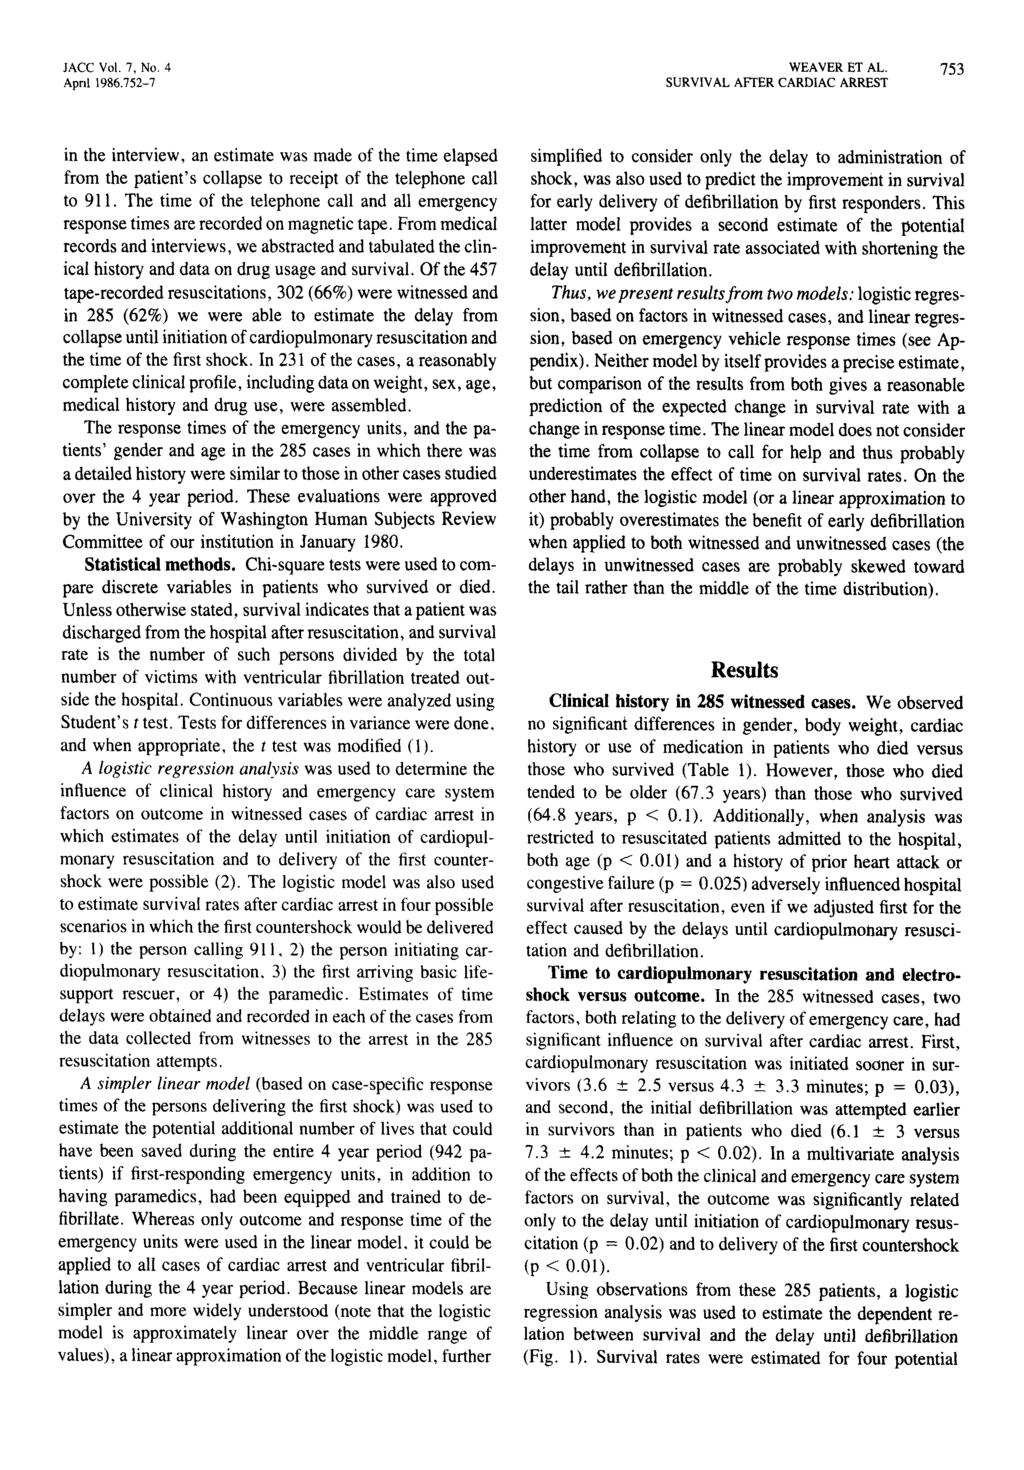 JACC Vol. 7, No.4 Apnl 1986.752-7 WEAVER ET AL.